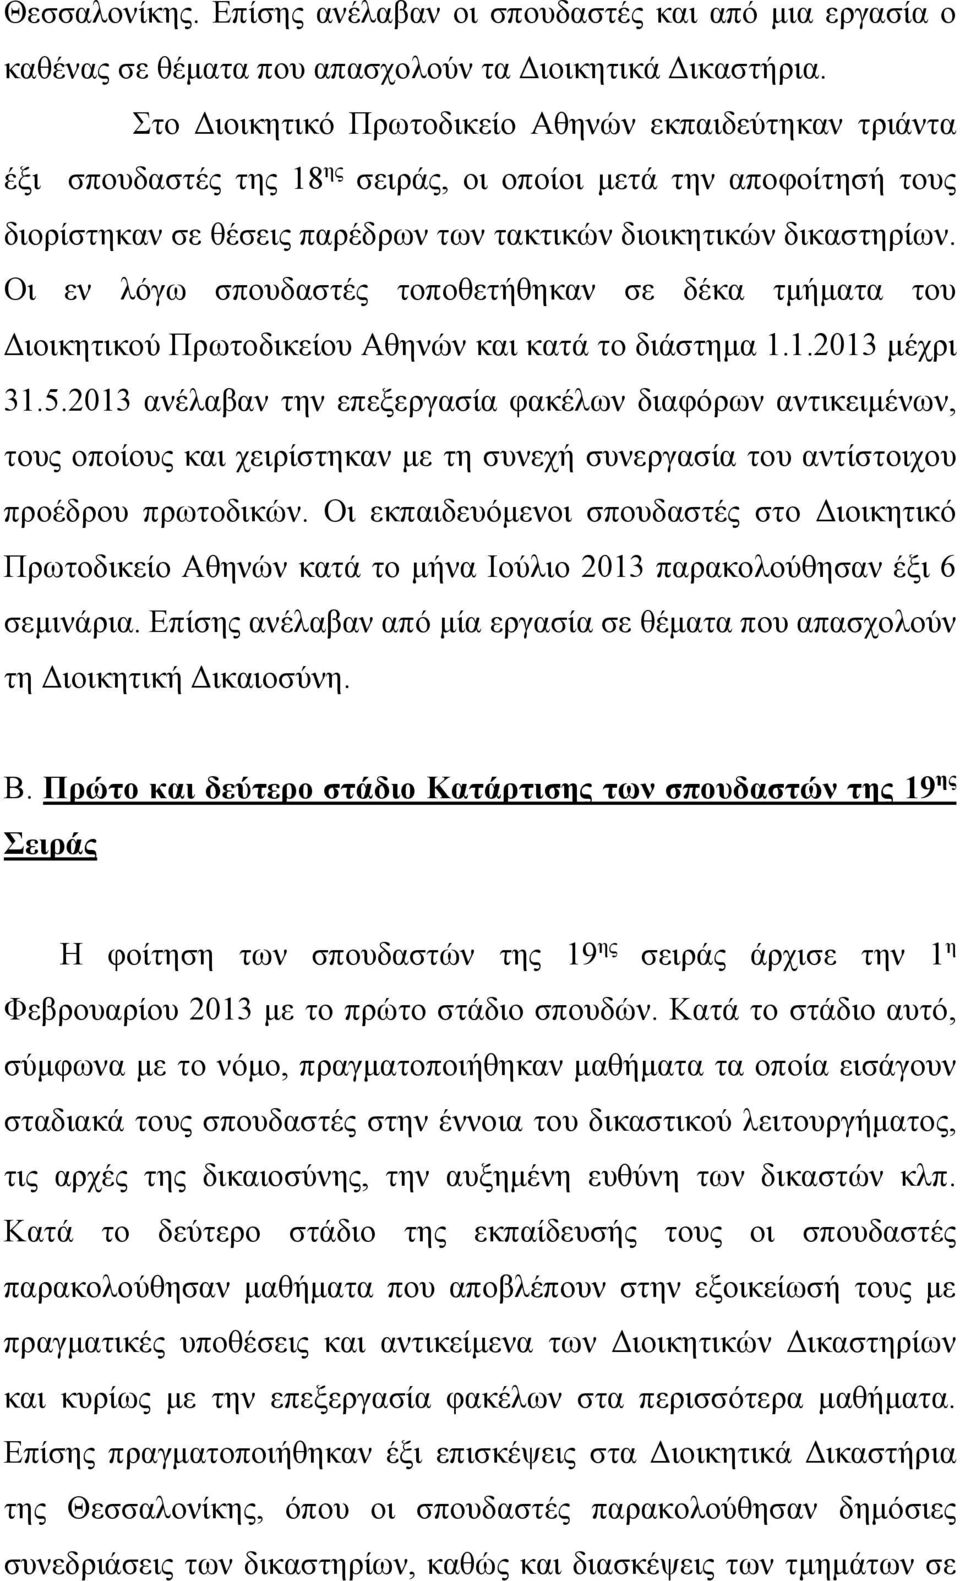 Οι εν λόγω σπουδαστές τοποθετήθηκαν σε δέκα τμήματα του Διοικητικού Πρωτοδικείου Αθηνών και κατά το διάστημα 1.1.2013 μέχρι 31.5.